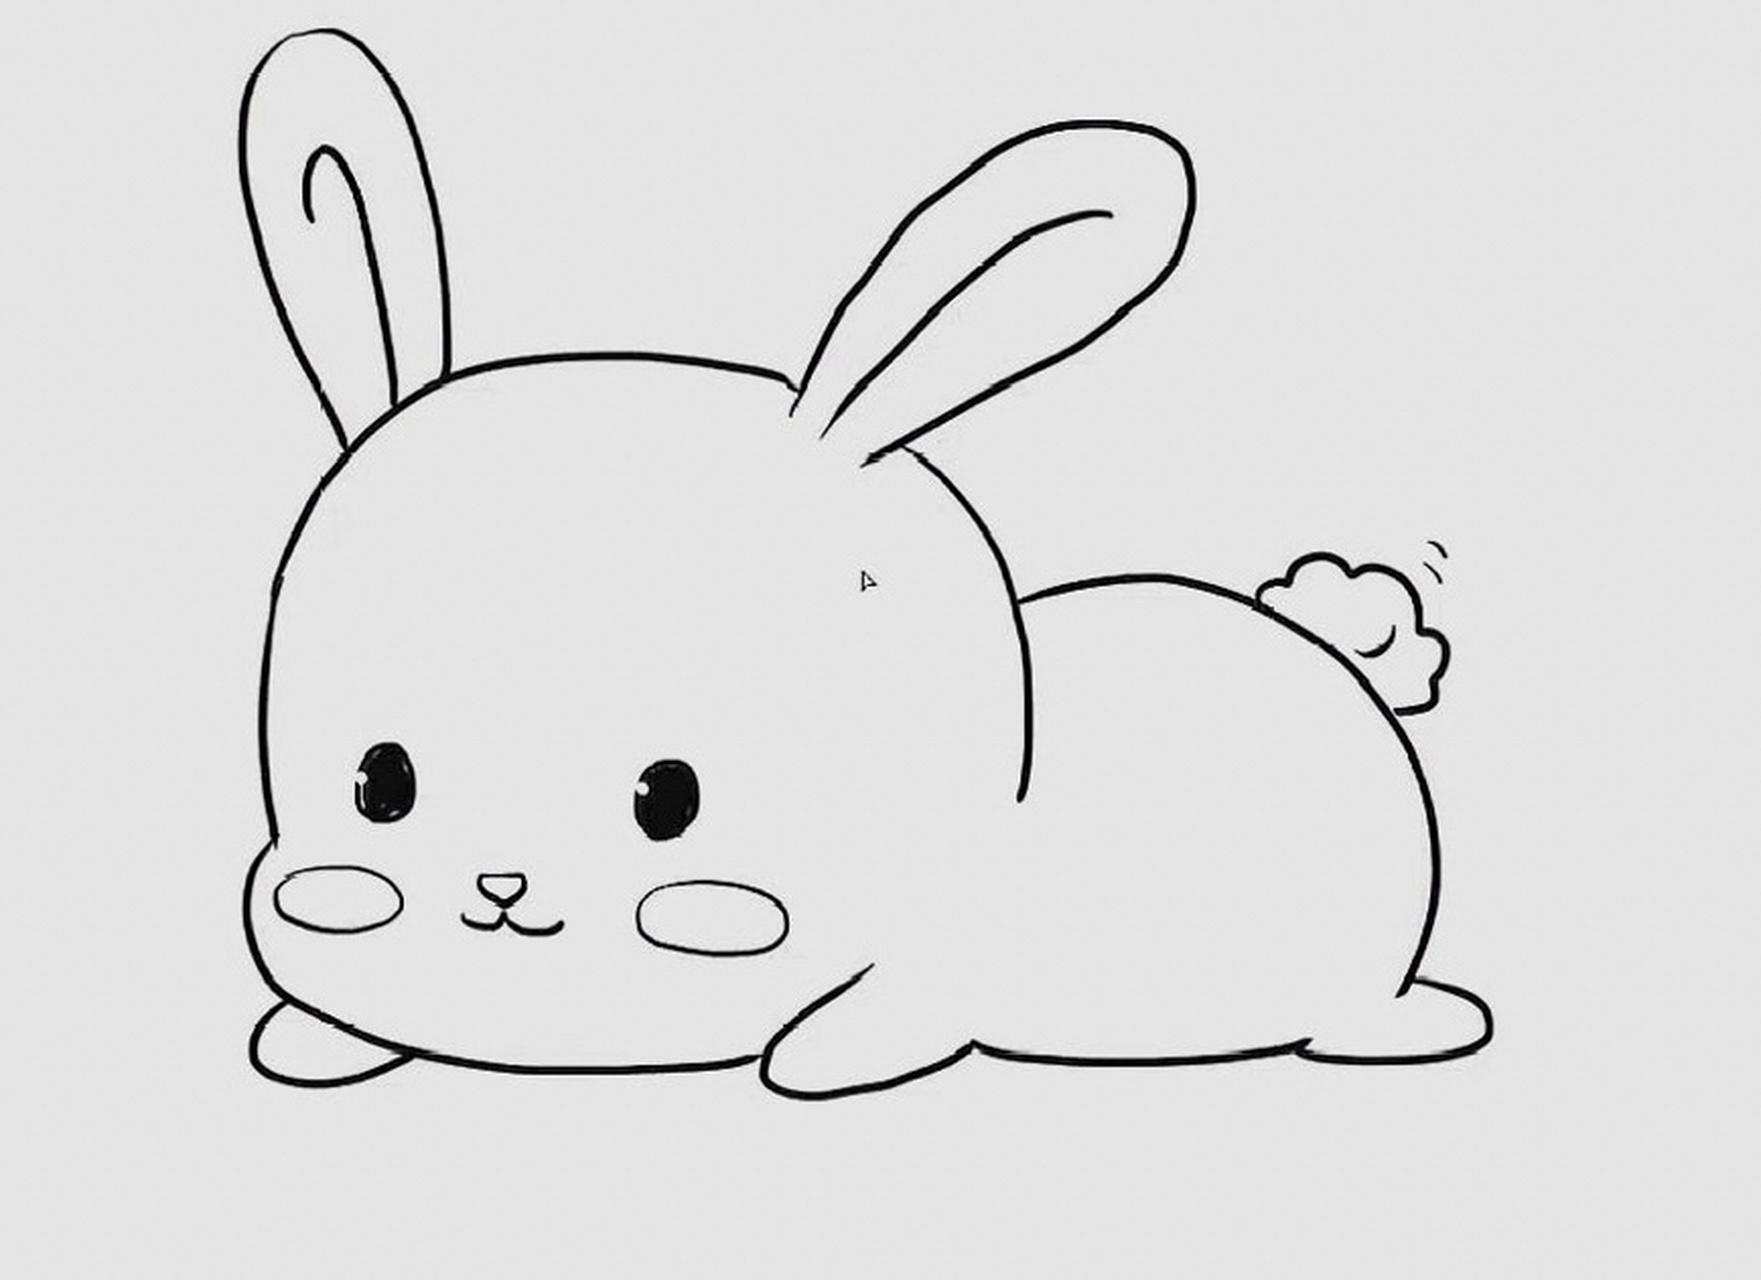 小兔子简笔画 美术,简笔画,儿童创意美术,可爱的小兔子 